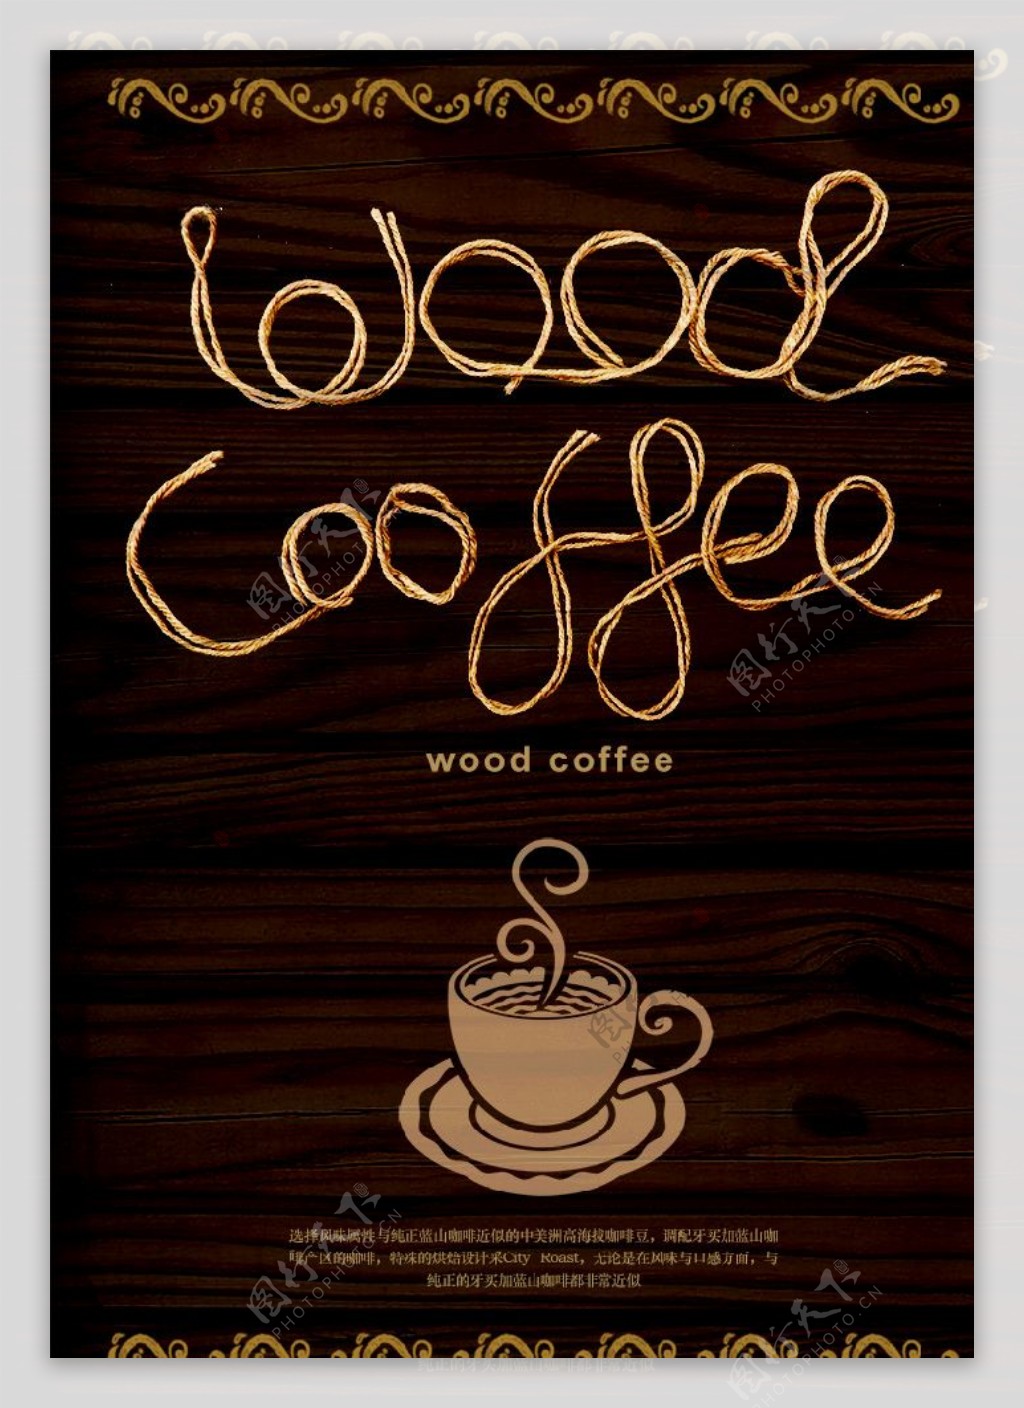 创意咖啡海报